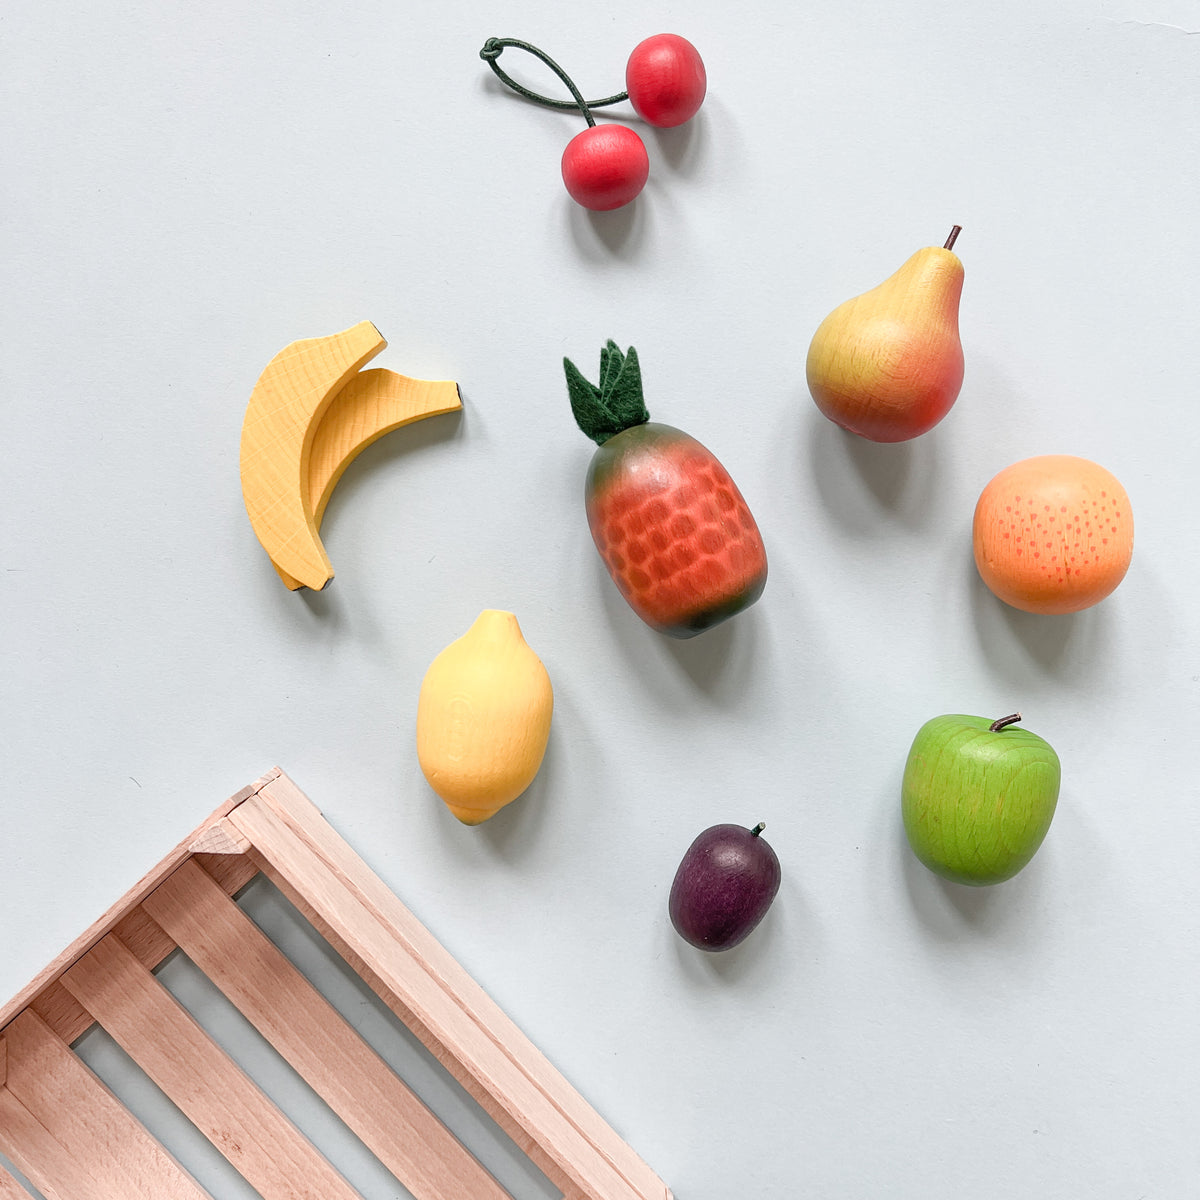 Erzi Small Fruits in Crate